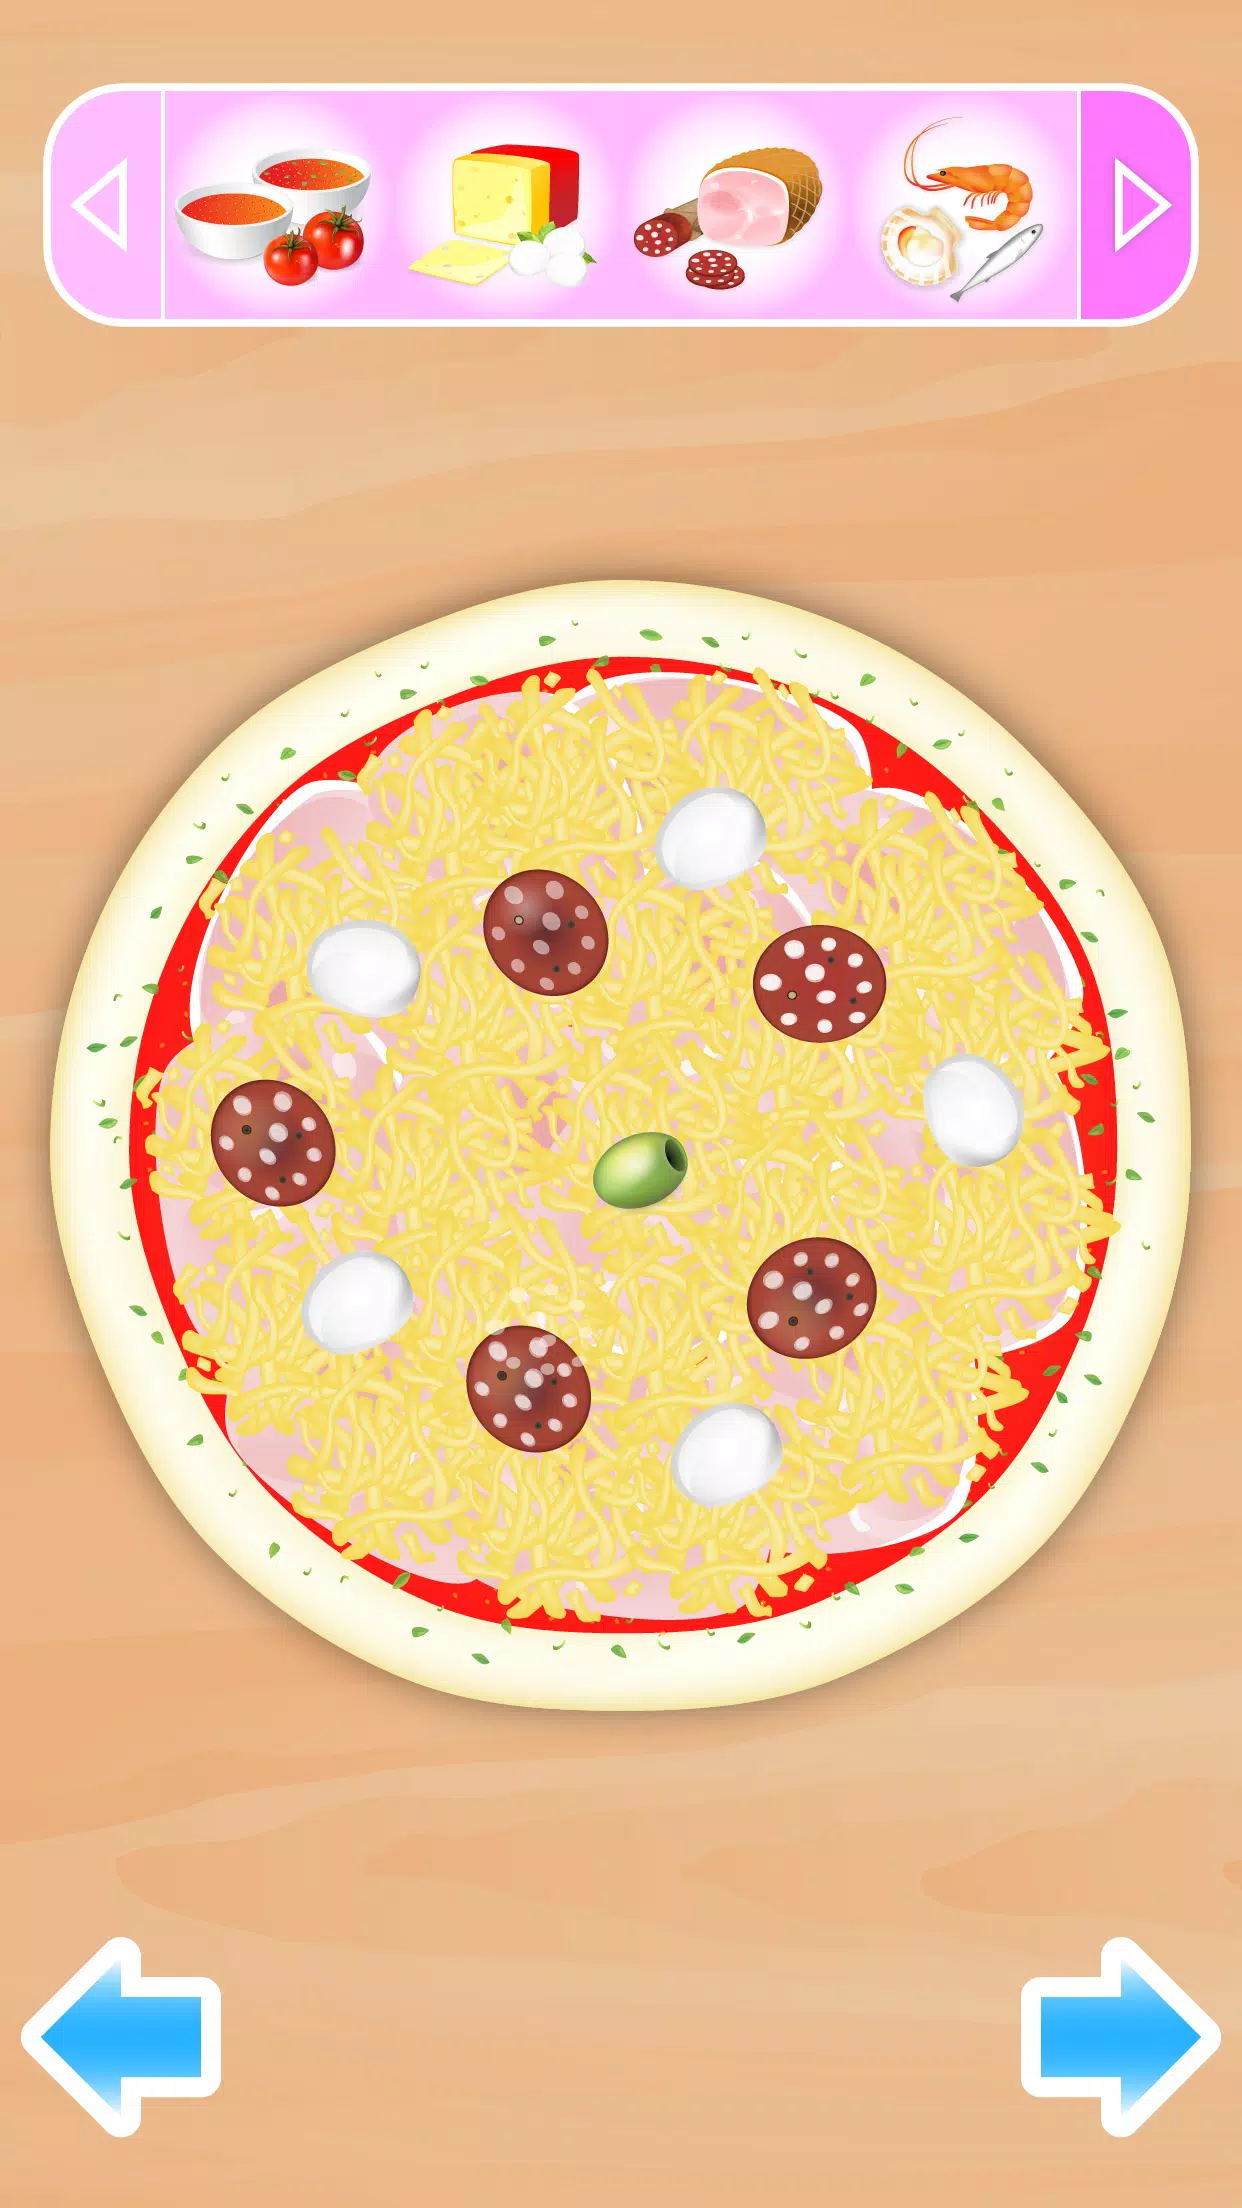 البيتزا - لعبة طبخ APK للاندرويد تنزيل